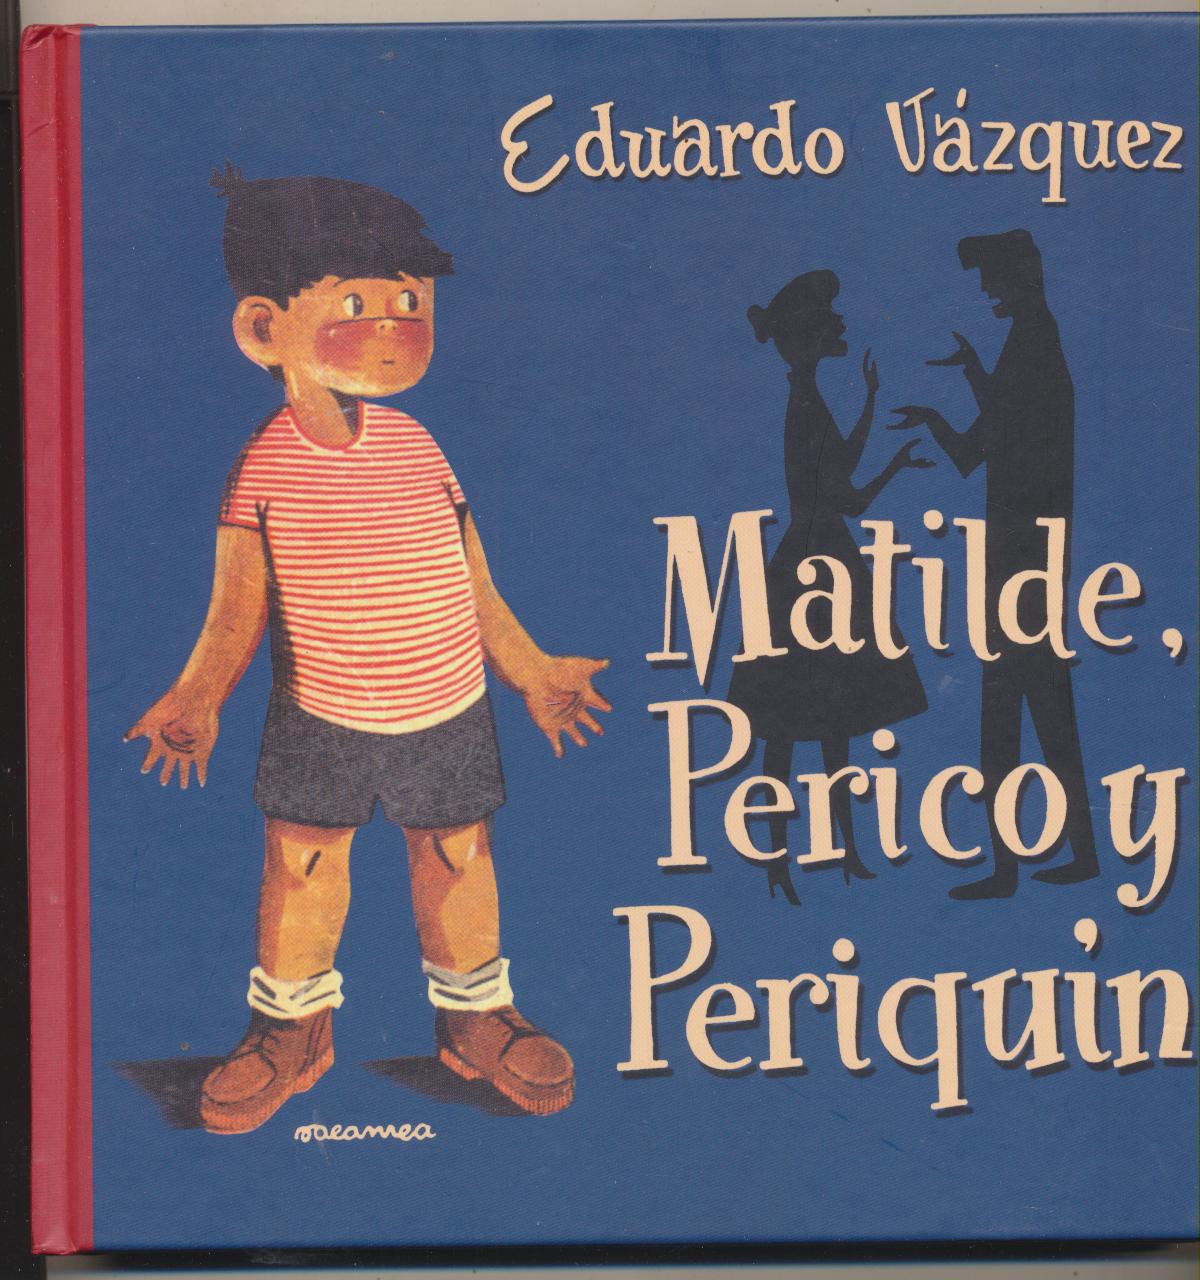 Eduardo Vázquez. Matilde Perico y Periquín. Edición Edaf del 2004